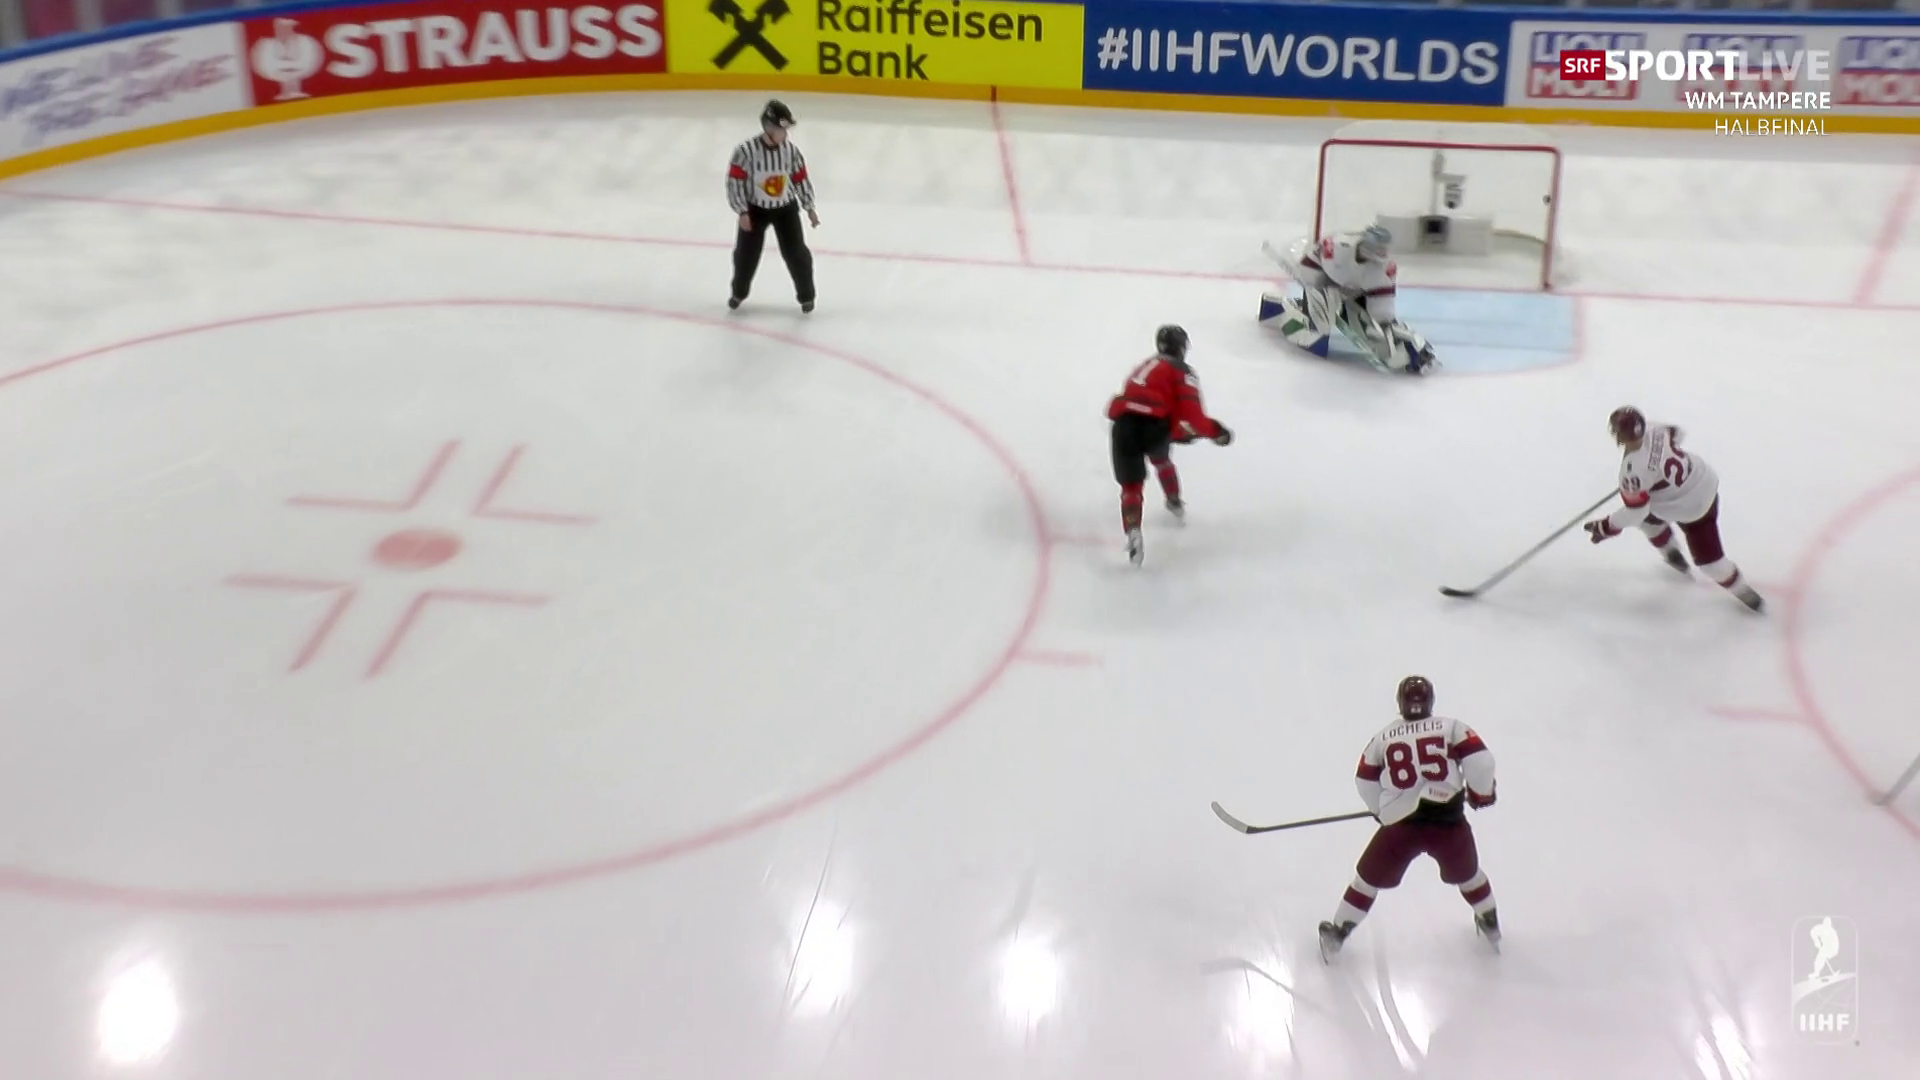 Halbfinals an der Eishockey-WM - Deutschland überrascht die USA, Kanada dank Wende im WM-Final - Sport